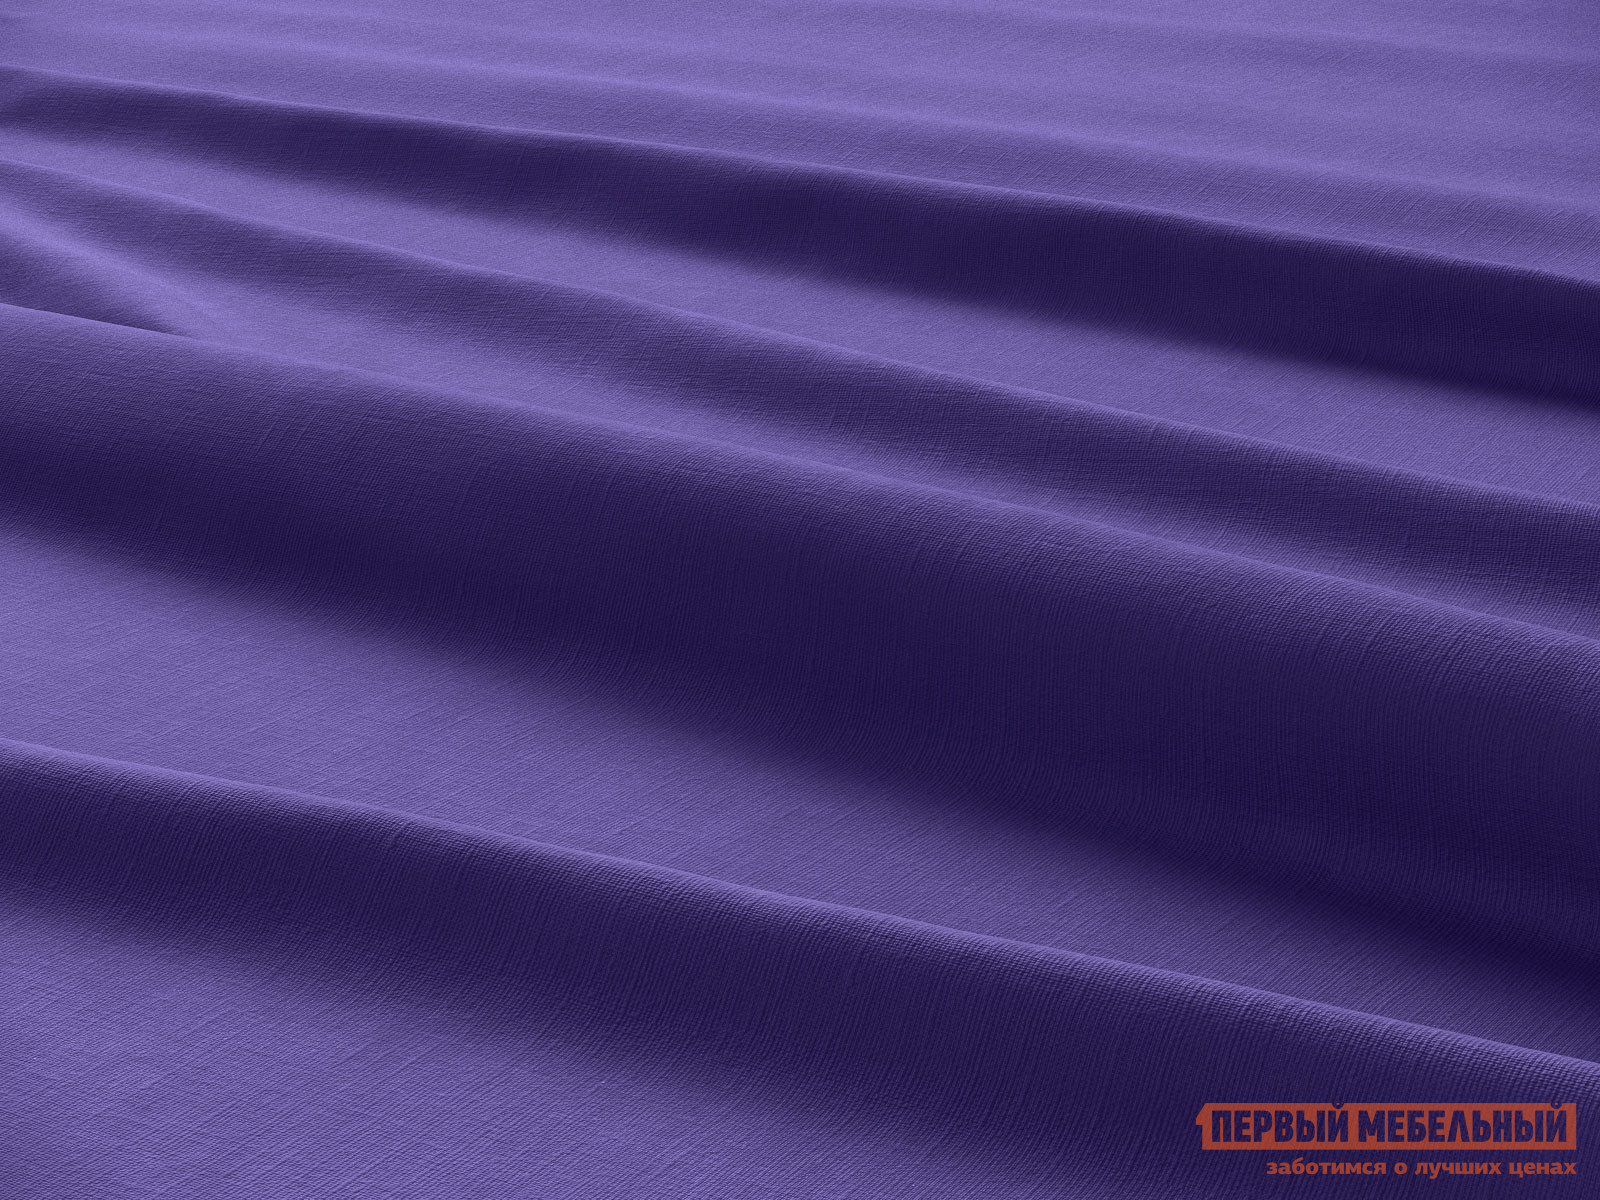 Простыня  Вайолет Фиолетовый, сатин, 1400 Х 2000 мм